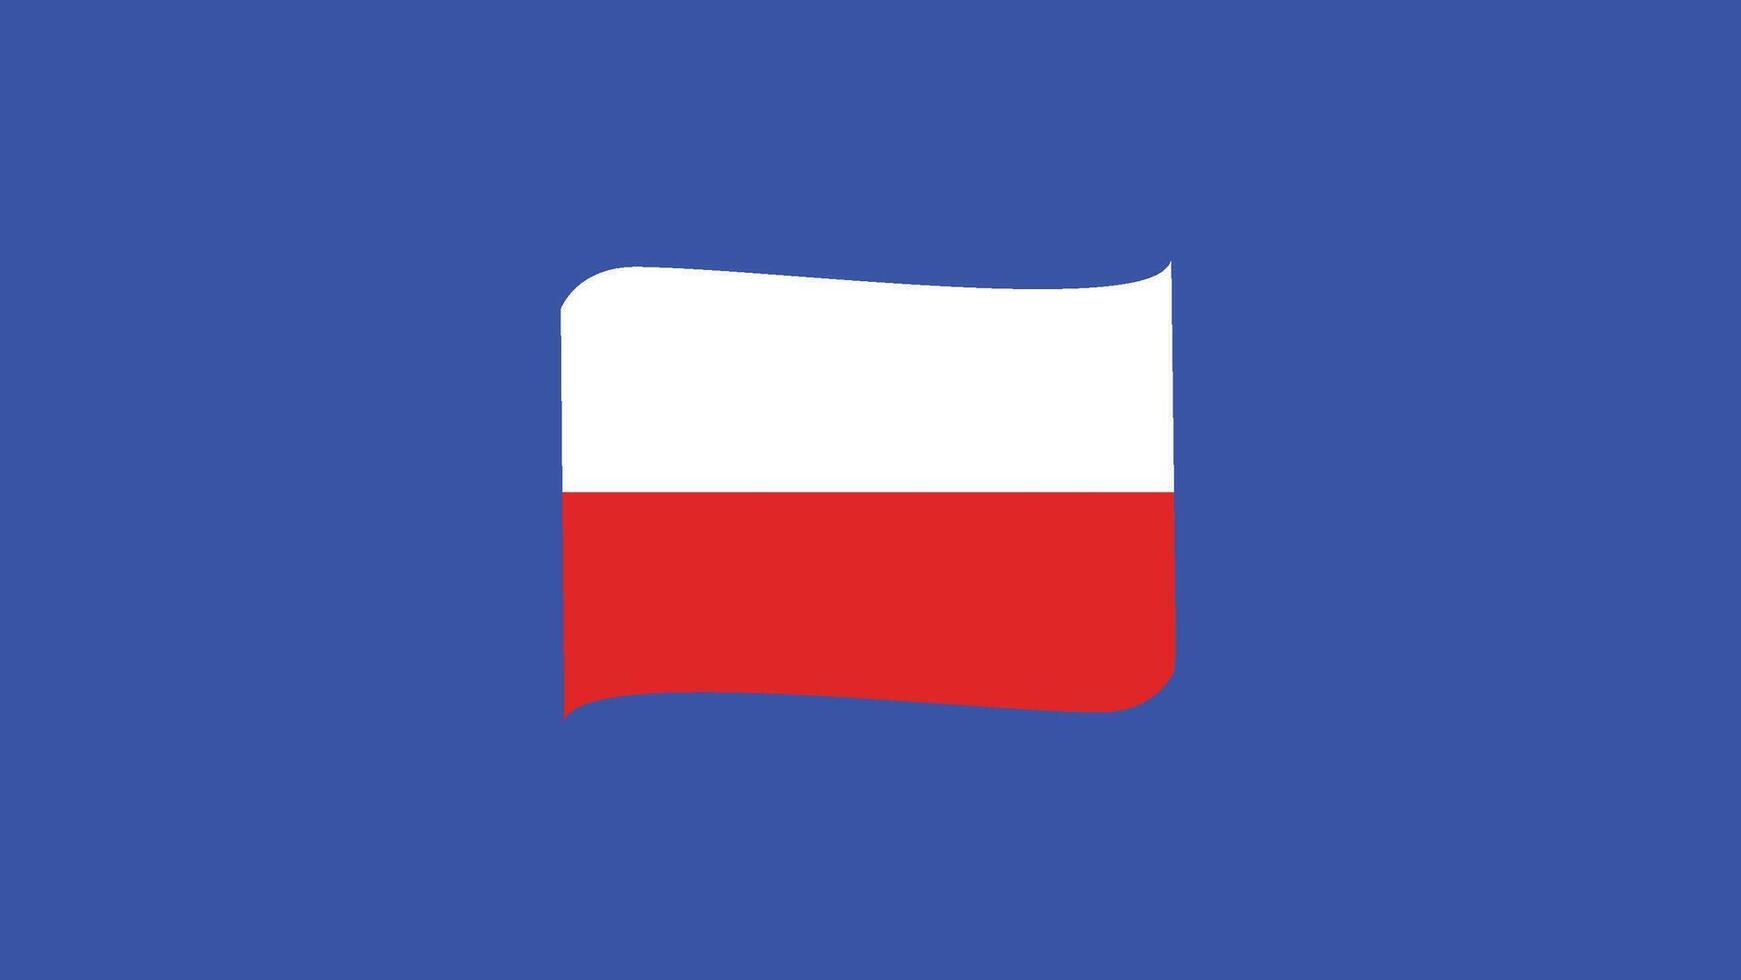 Pologne emblème ruban européen nations 2024 équipes des pays européen Allemagne Football symbole logo conception illustration vecteur